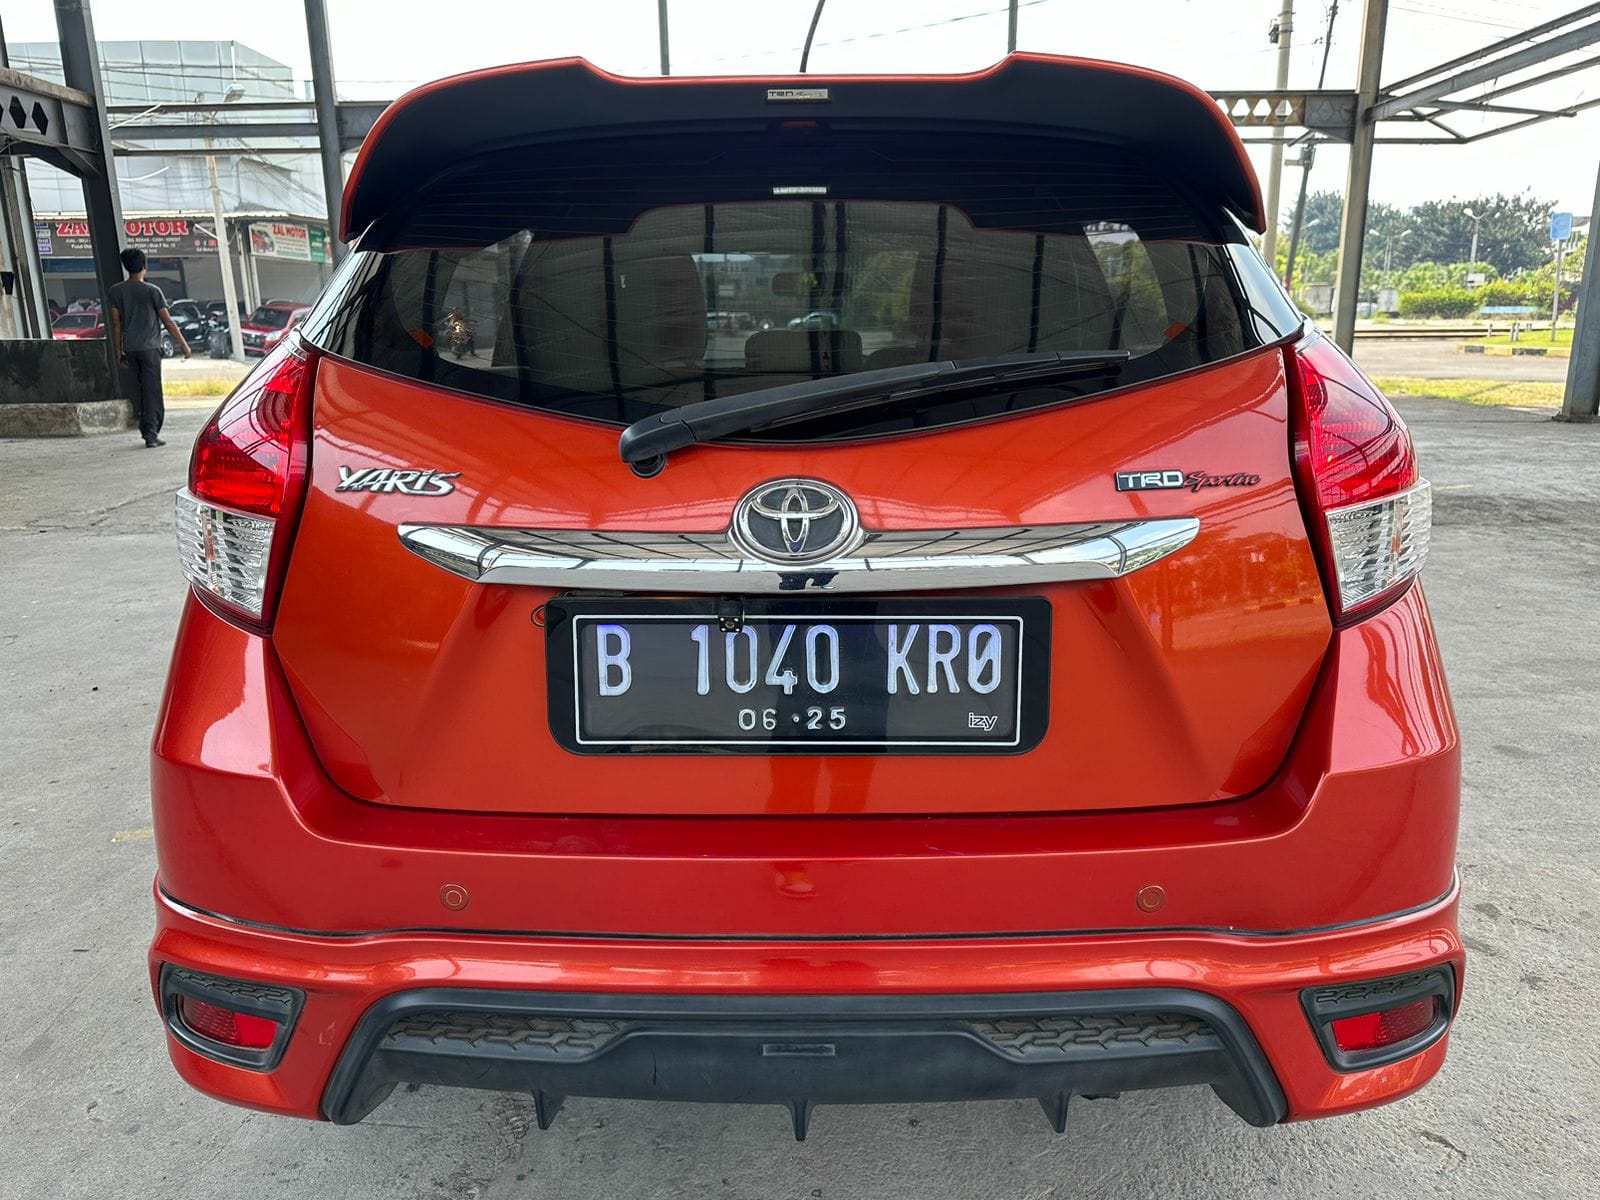 Old 2015 Toyota Yaris TRD SPORTIVO 1.5L MT TRD SPORTIVO 1.5L MT